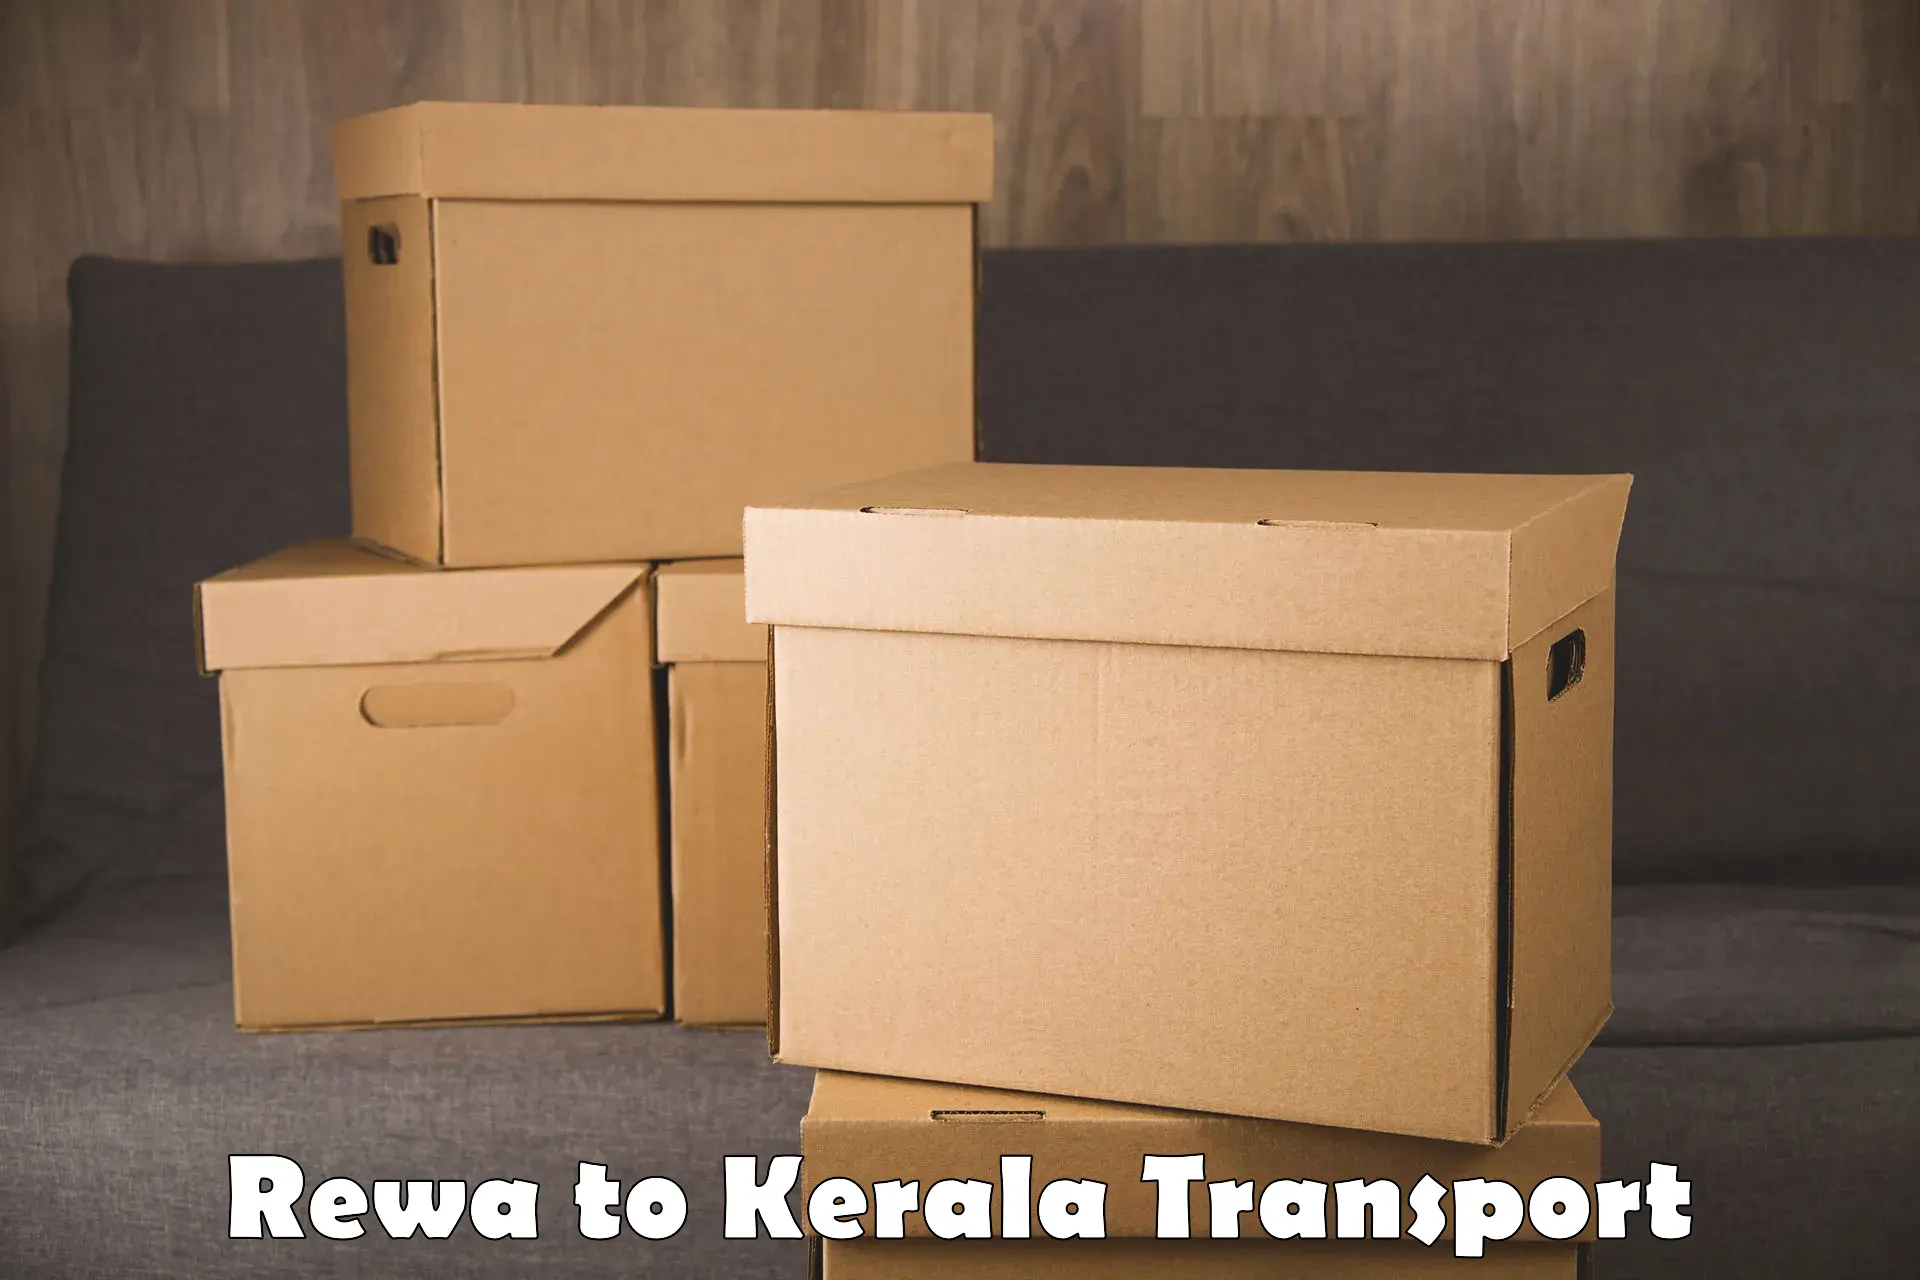 Nearest transport service Rewa to Taliparamba